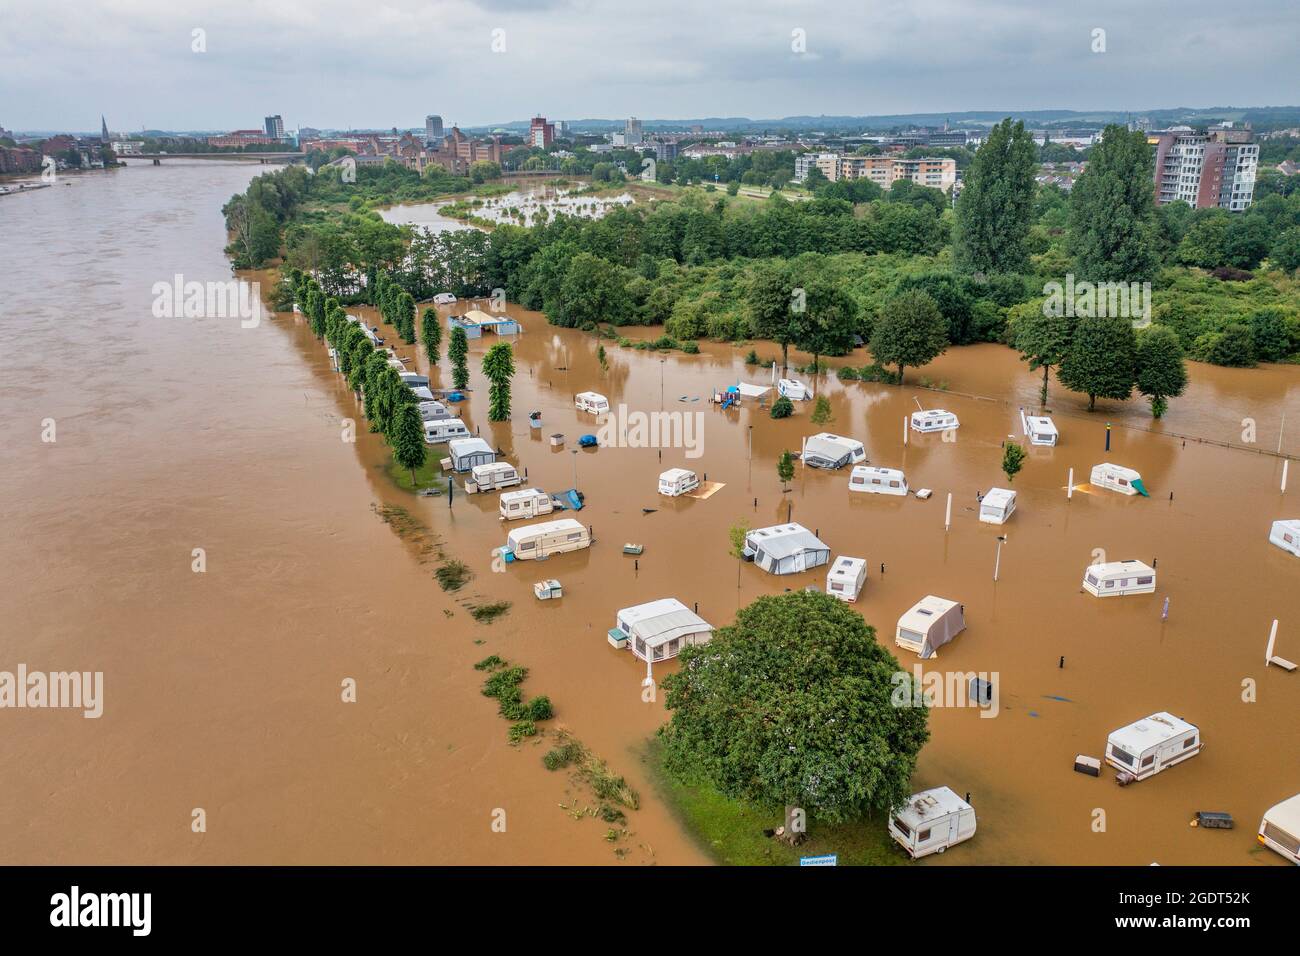 Niederlande, Maastricht. Überschwemmter Campingplatz aufgrund von Überschwemmungen des Flusses Maas. Antenne. Stockfoto